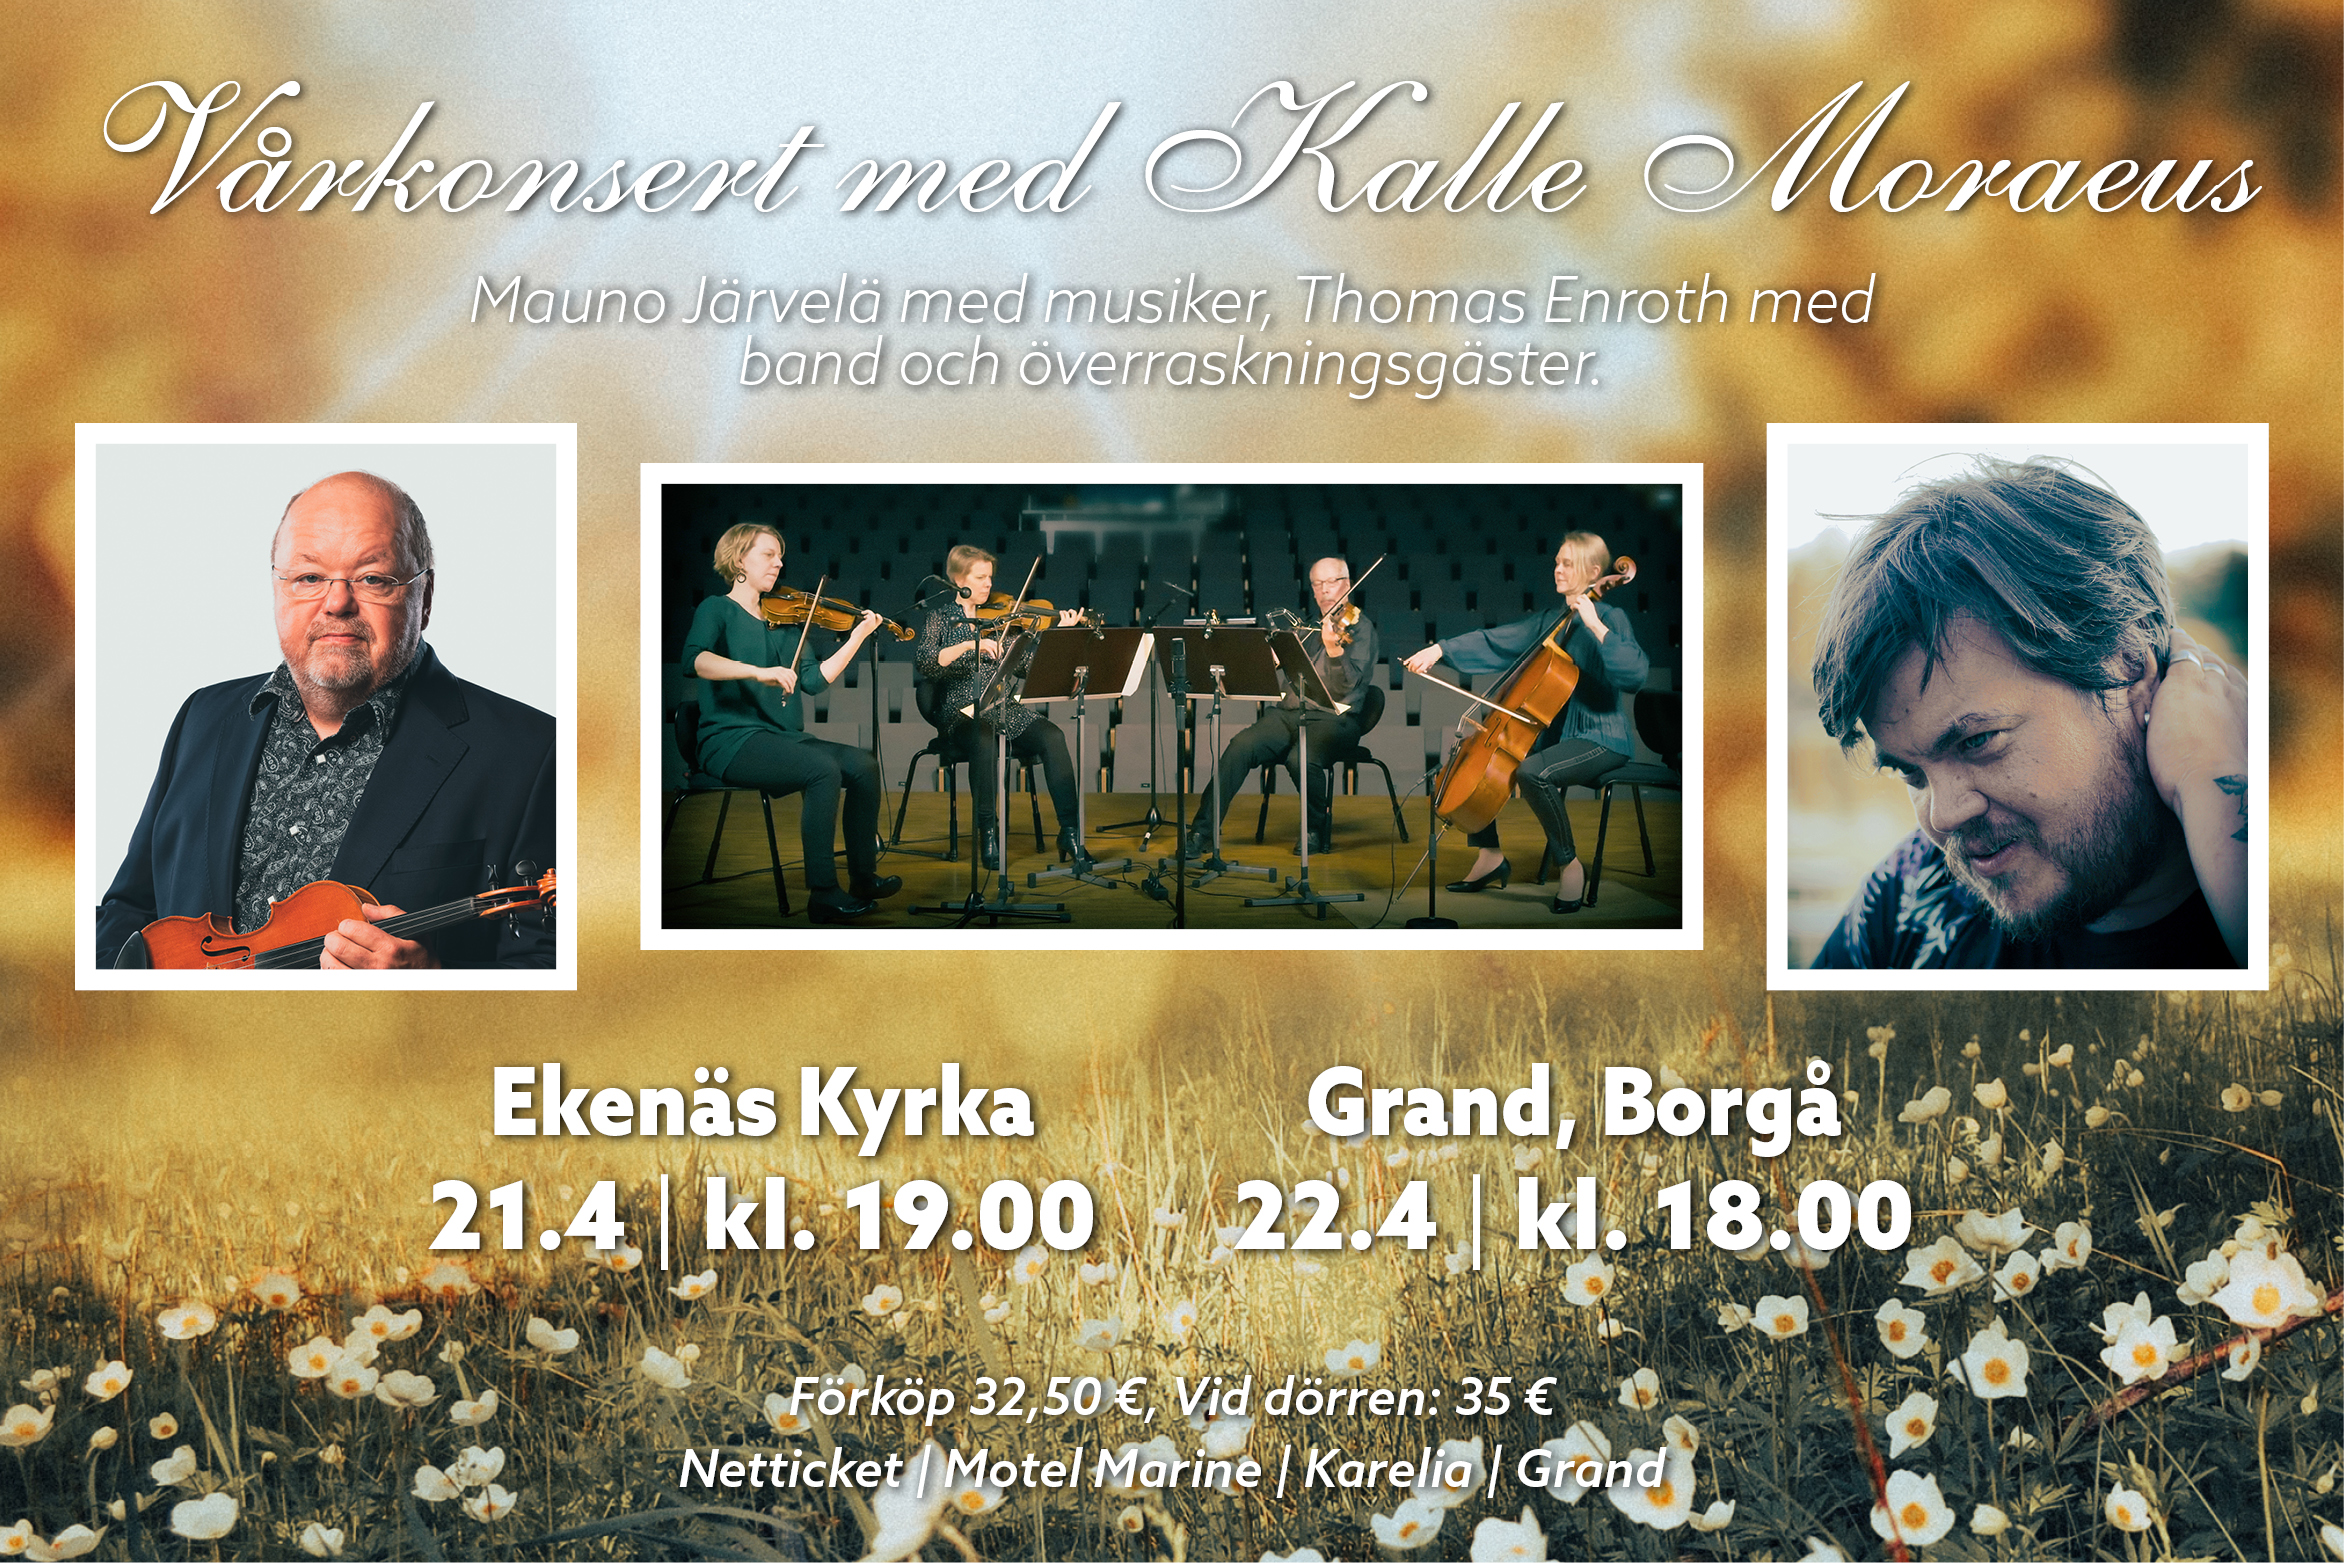 Bild av Kalle Moraeus, Thomas Enroth och en stråkkvartett mot en fond av vårblommor.